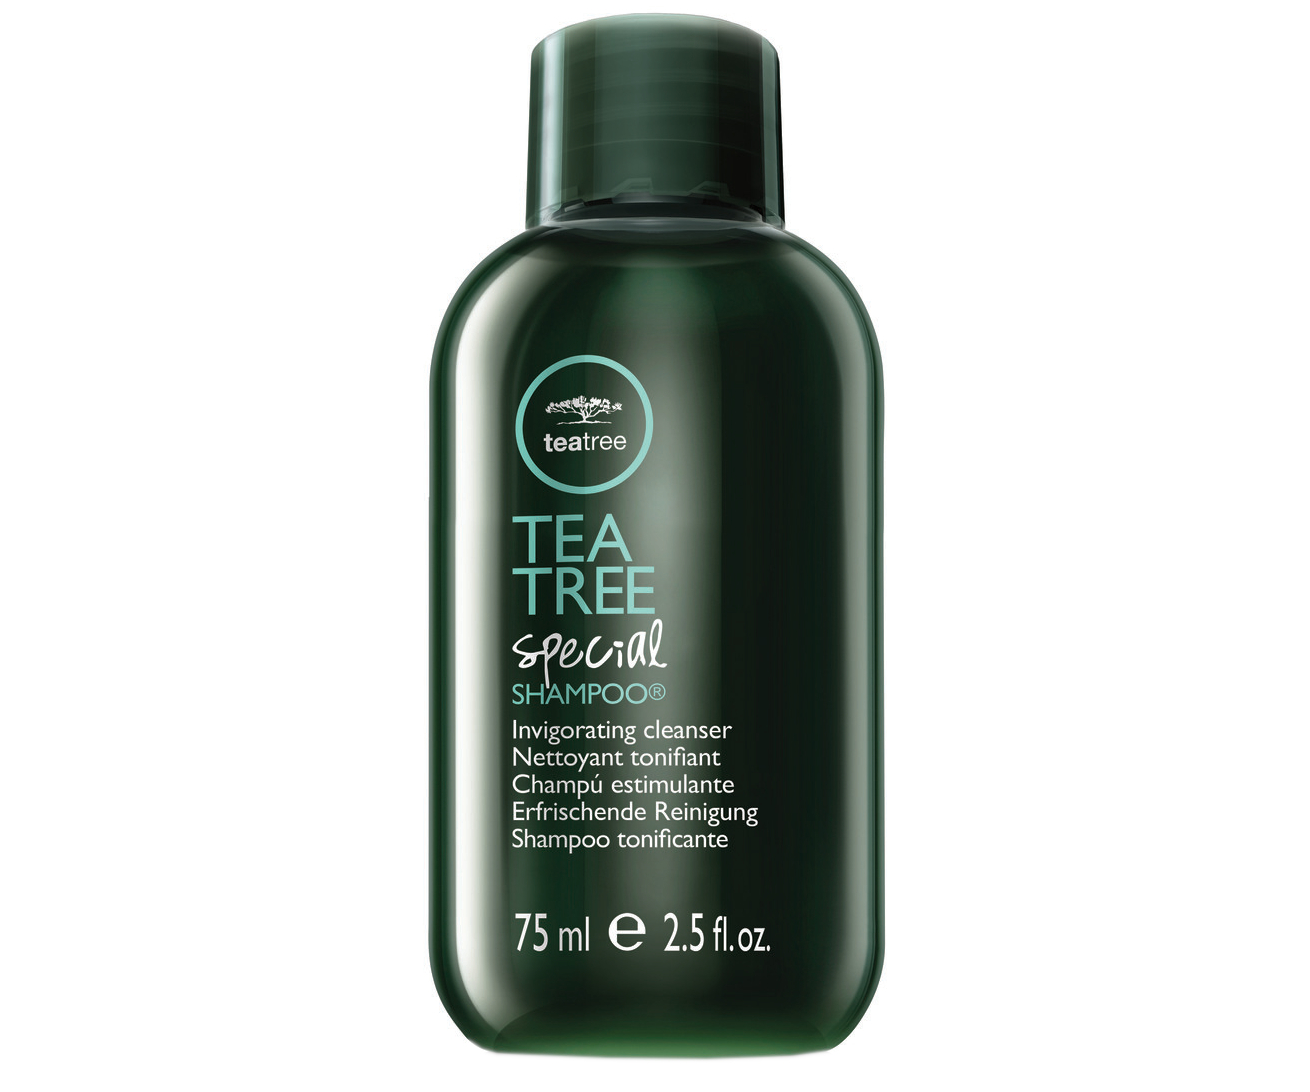 Osvěžující šampon na vlasy Paul Mitchell Tea Tree Special - 75 ml (201110) + DÁREK ZDARMA